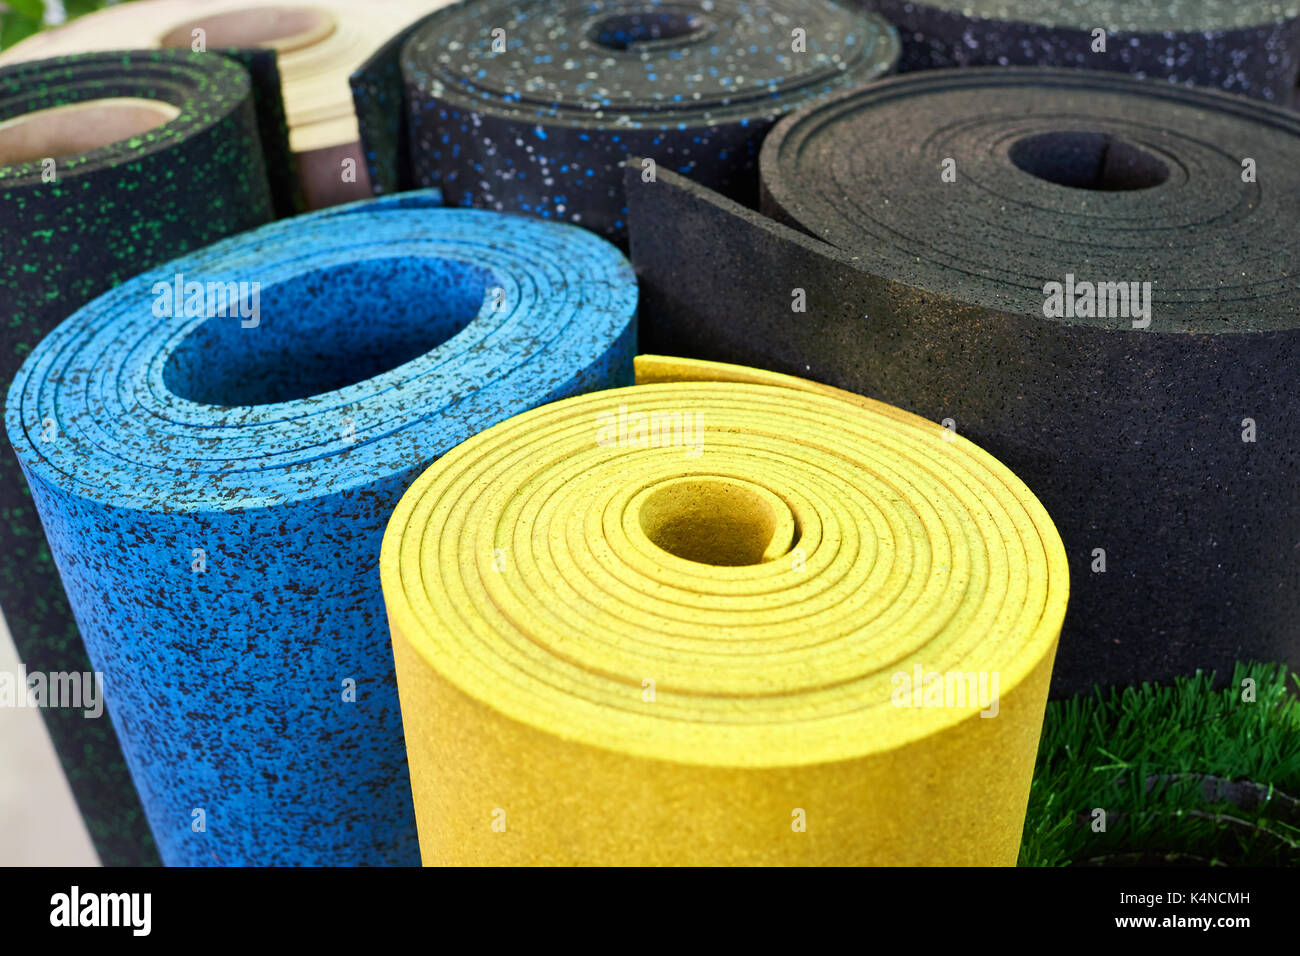 Kunststoff Gummi Bodenbeläge für Sporthallen Stockfotografie - Alamy